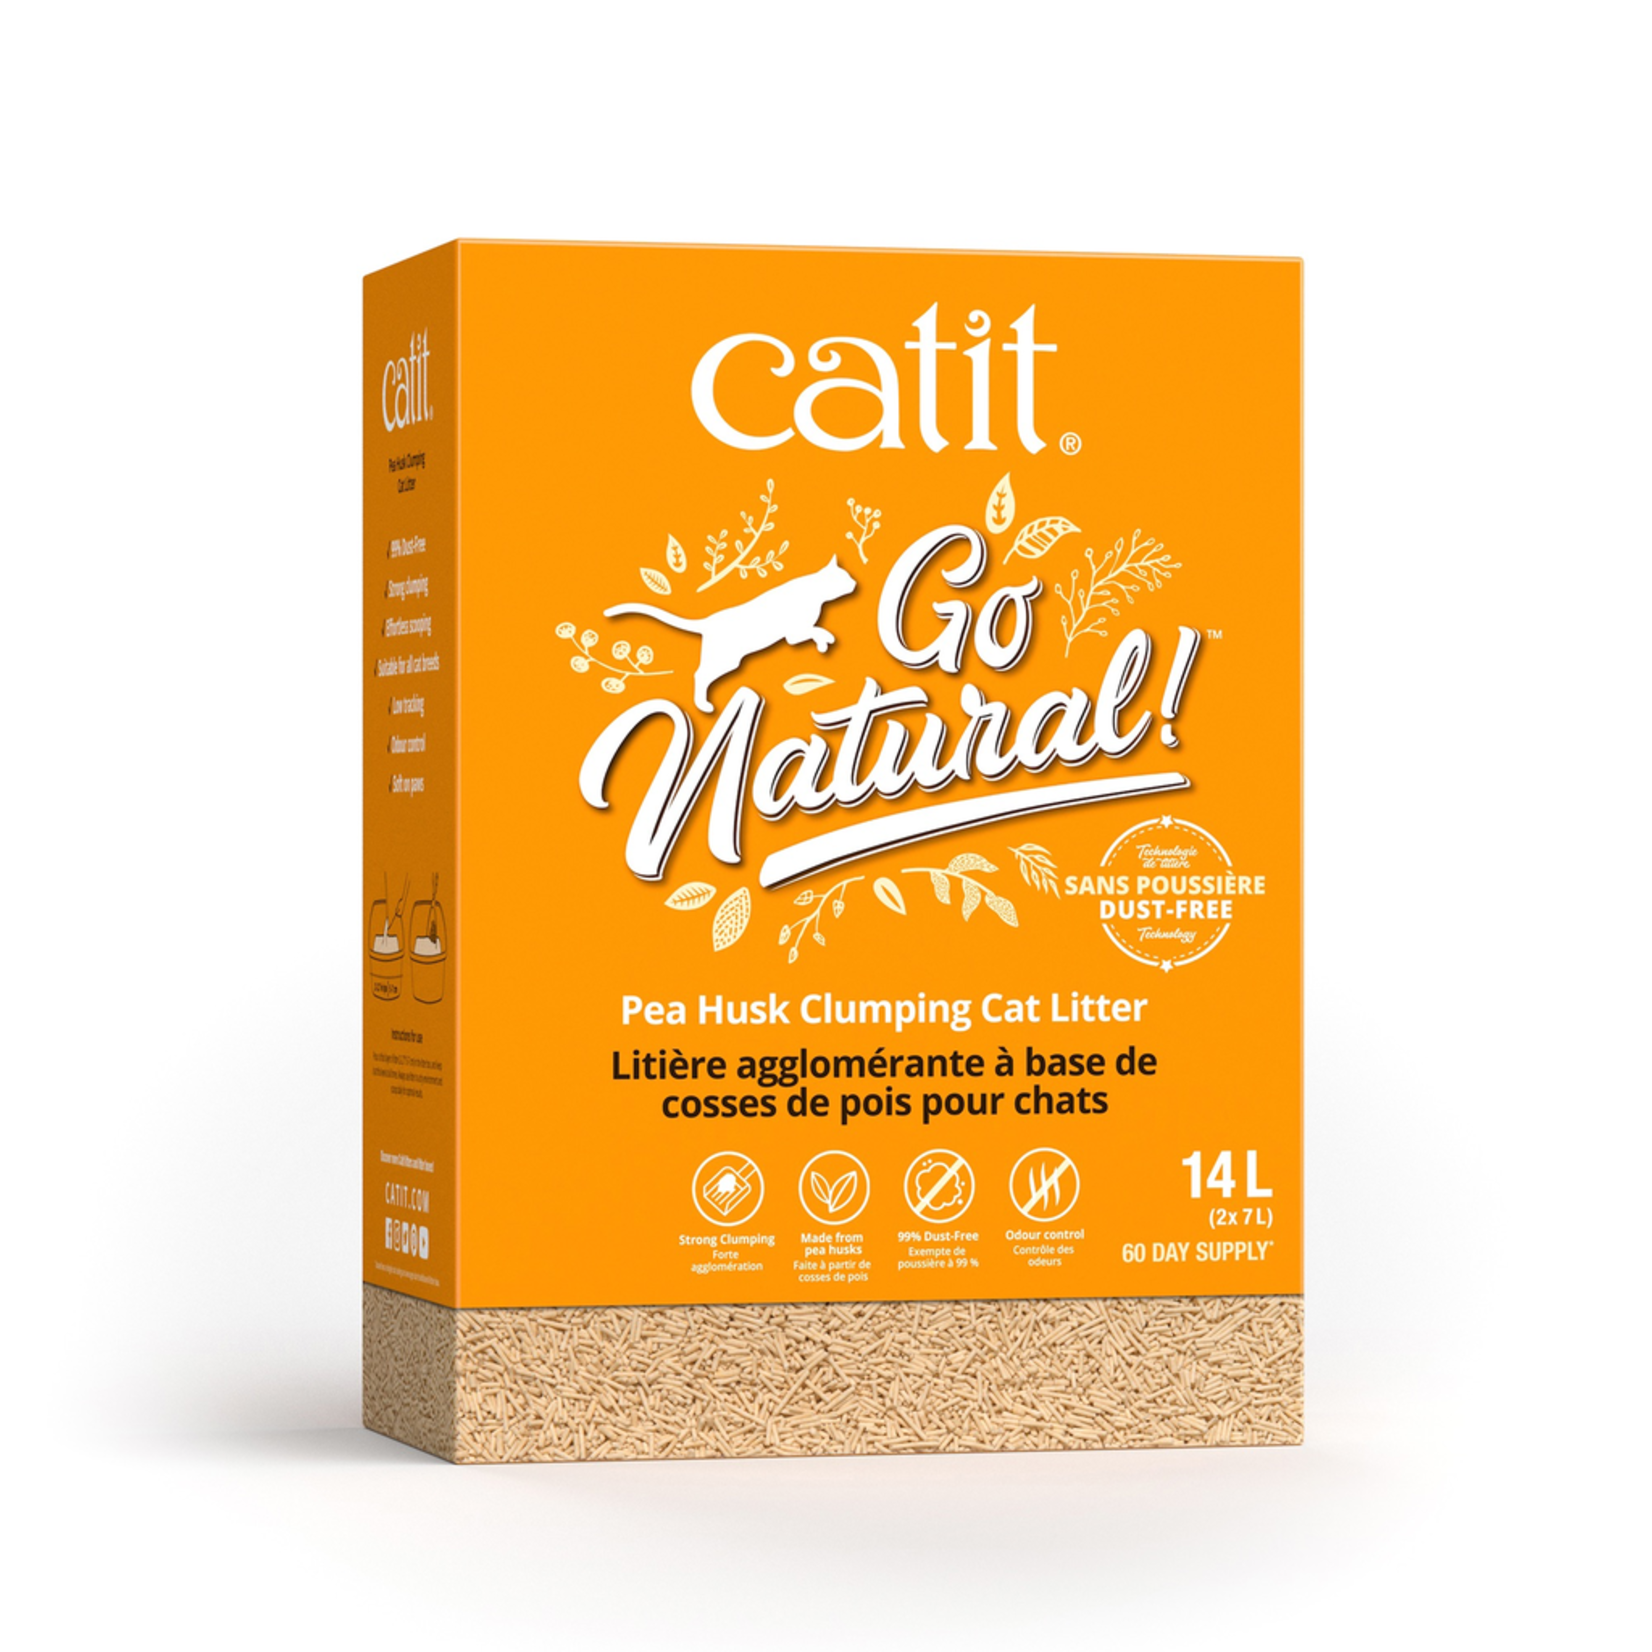 CAT IT (W) Catit Go Natural! Pea Husk Clumping Cat Litter - Natural - 14 L box